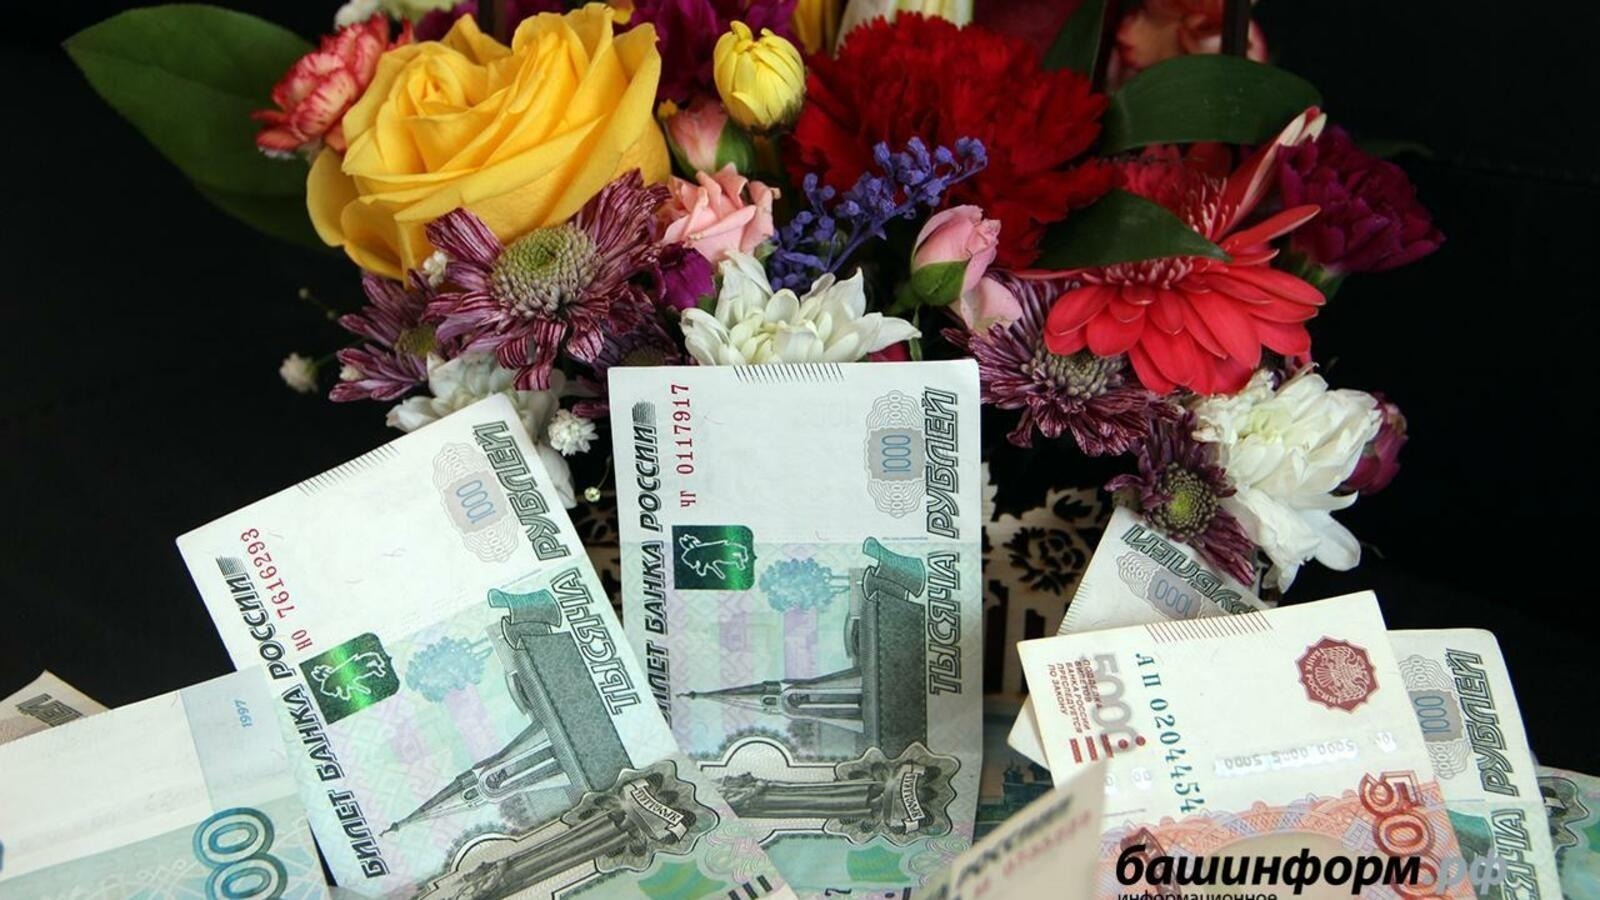 19 творческих проектов Башкирии на 16 млн рублей поддержал президентский фонд культурных инициатив